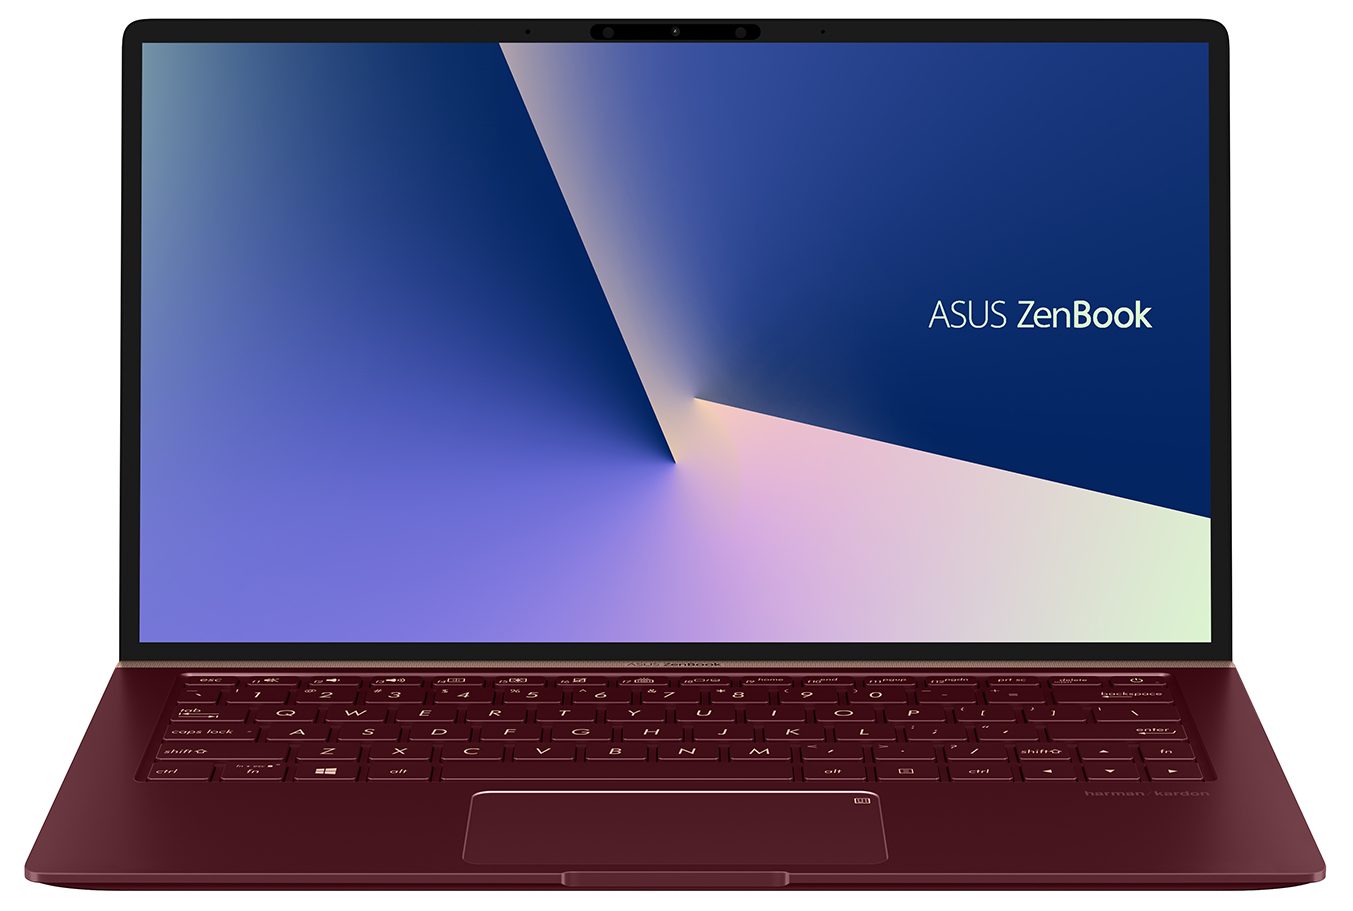 ASUS ZenBook 13 UX333 - i7-10510U · Intel UHD Graphics · 13.3”, Full HD (1920 x 1080), TN · 512GB SSD · 16GB DDR4 · Windows 10 Pro | LaptopMedia.com